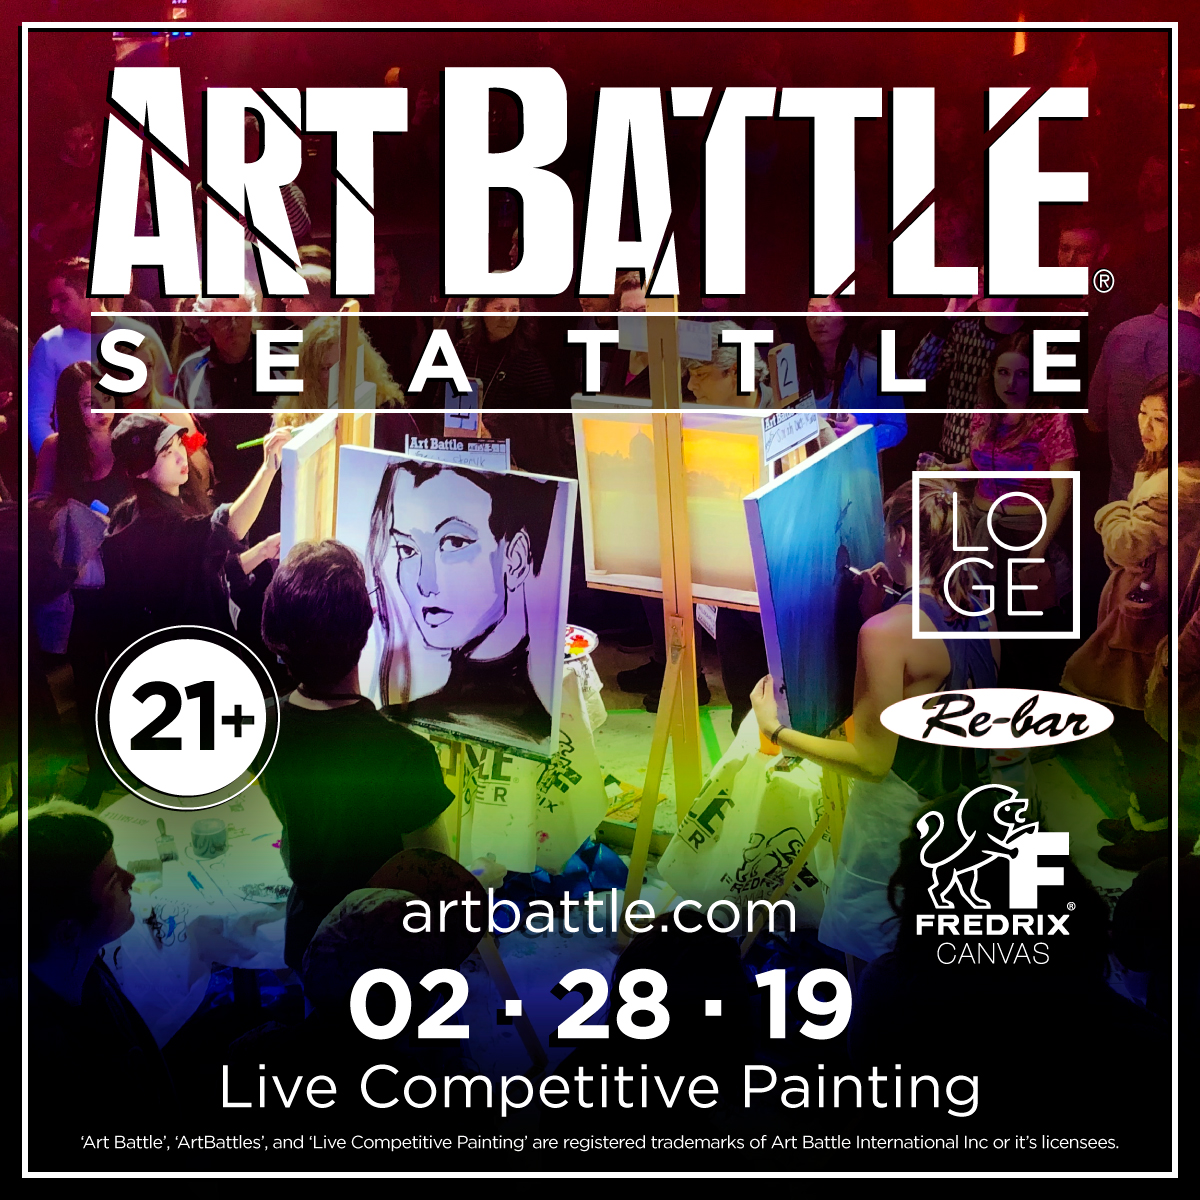 Art Battle Re Bar Event Poster